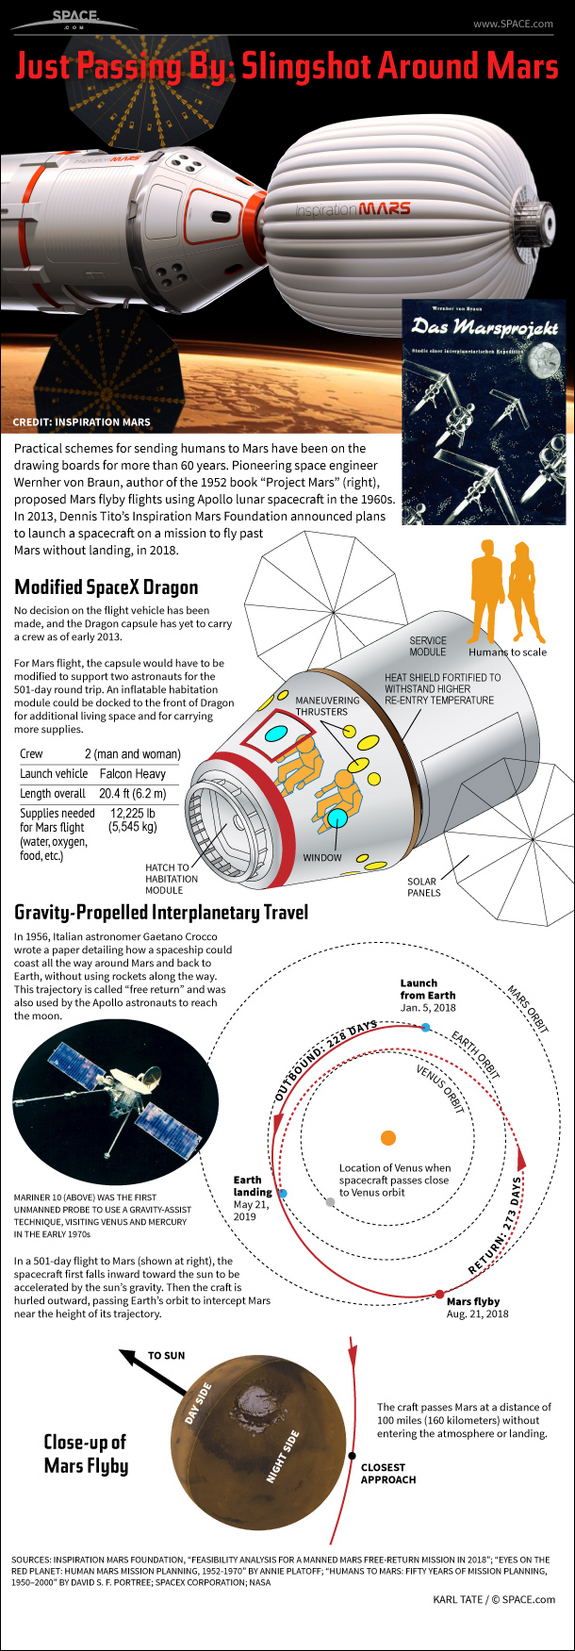 Découvrez la proposition audacieuse de Dennis Tito d'envoyer un couple marié sur un vol spatial de 501 jours autour de la planète Mars et retour, dans cette infographie SPACE.com.